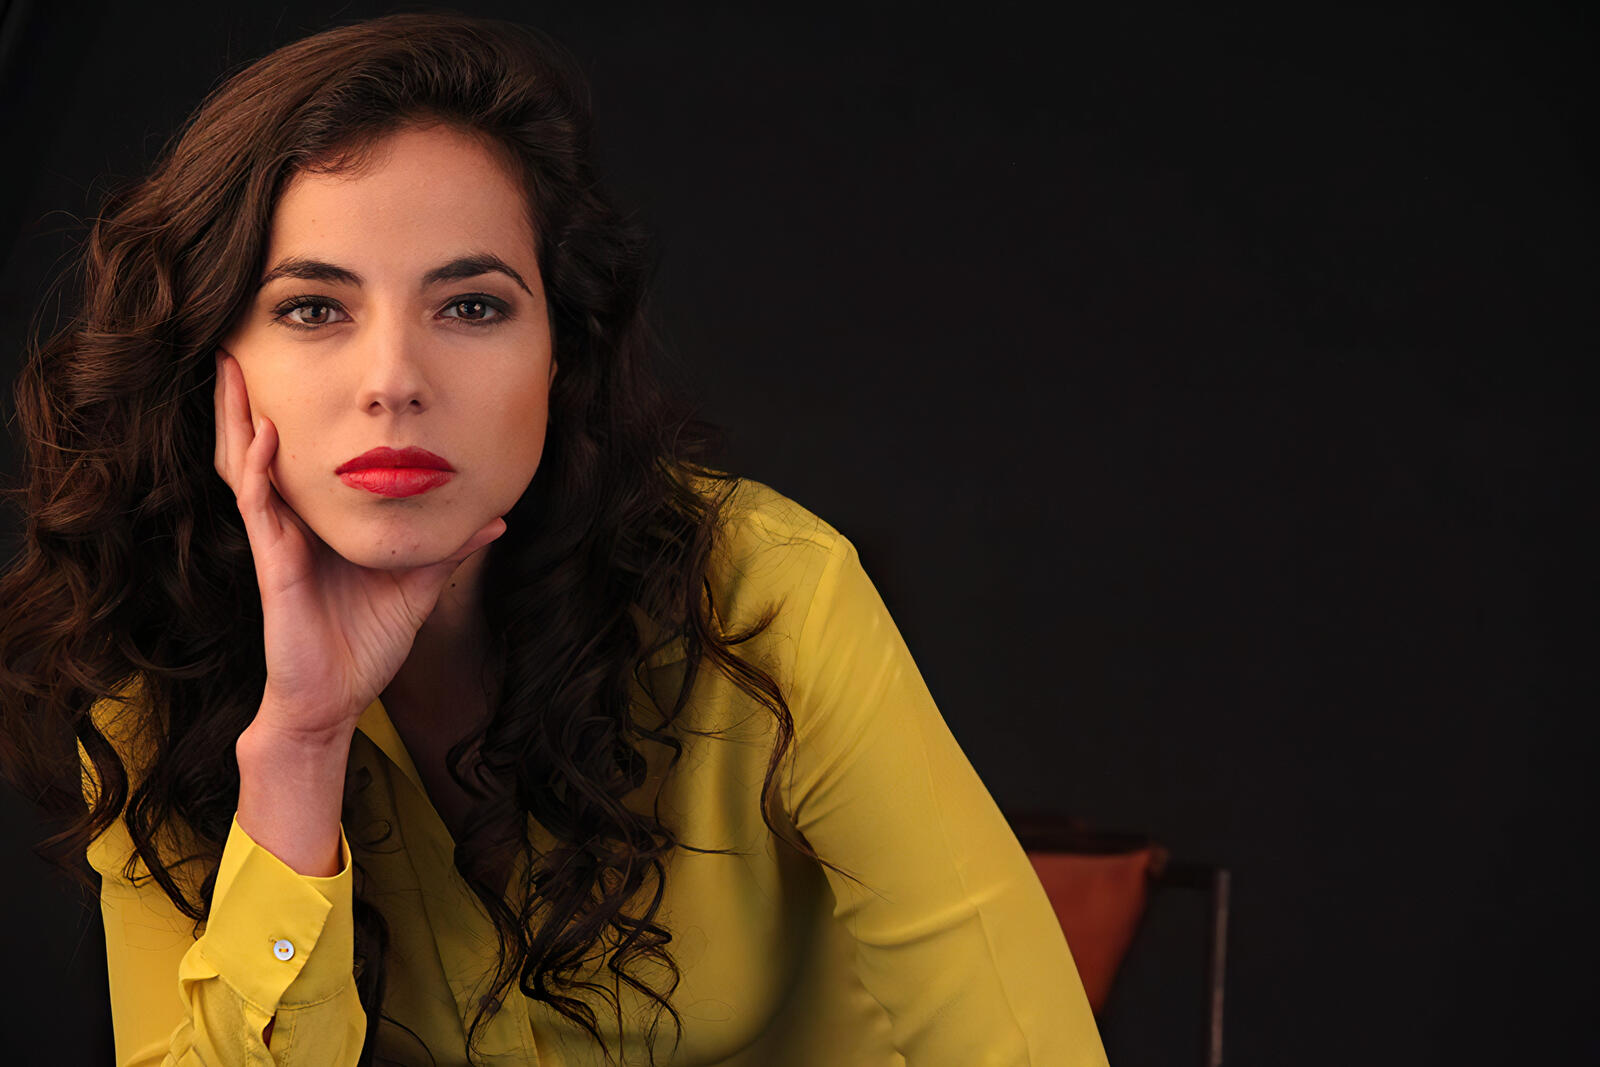 Бесплатное фото Кристина Родло в желтой блузке на черном фоне